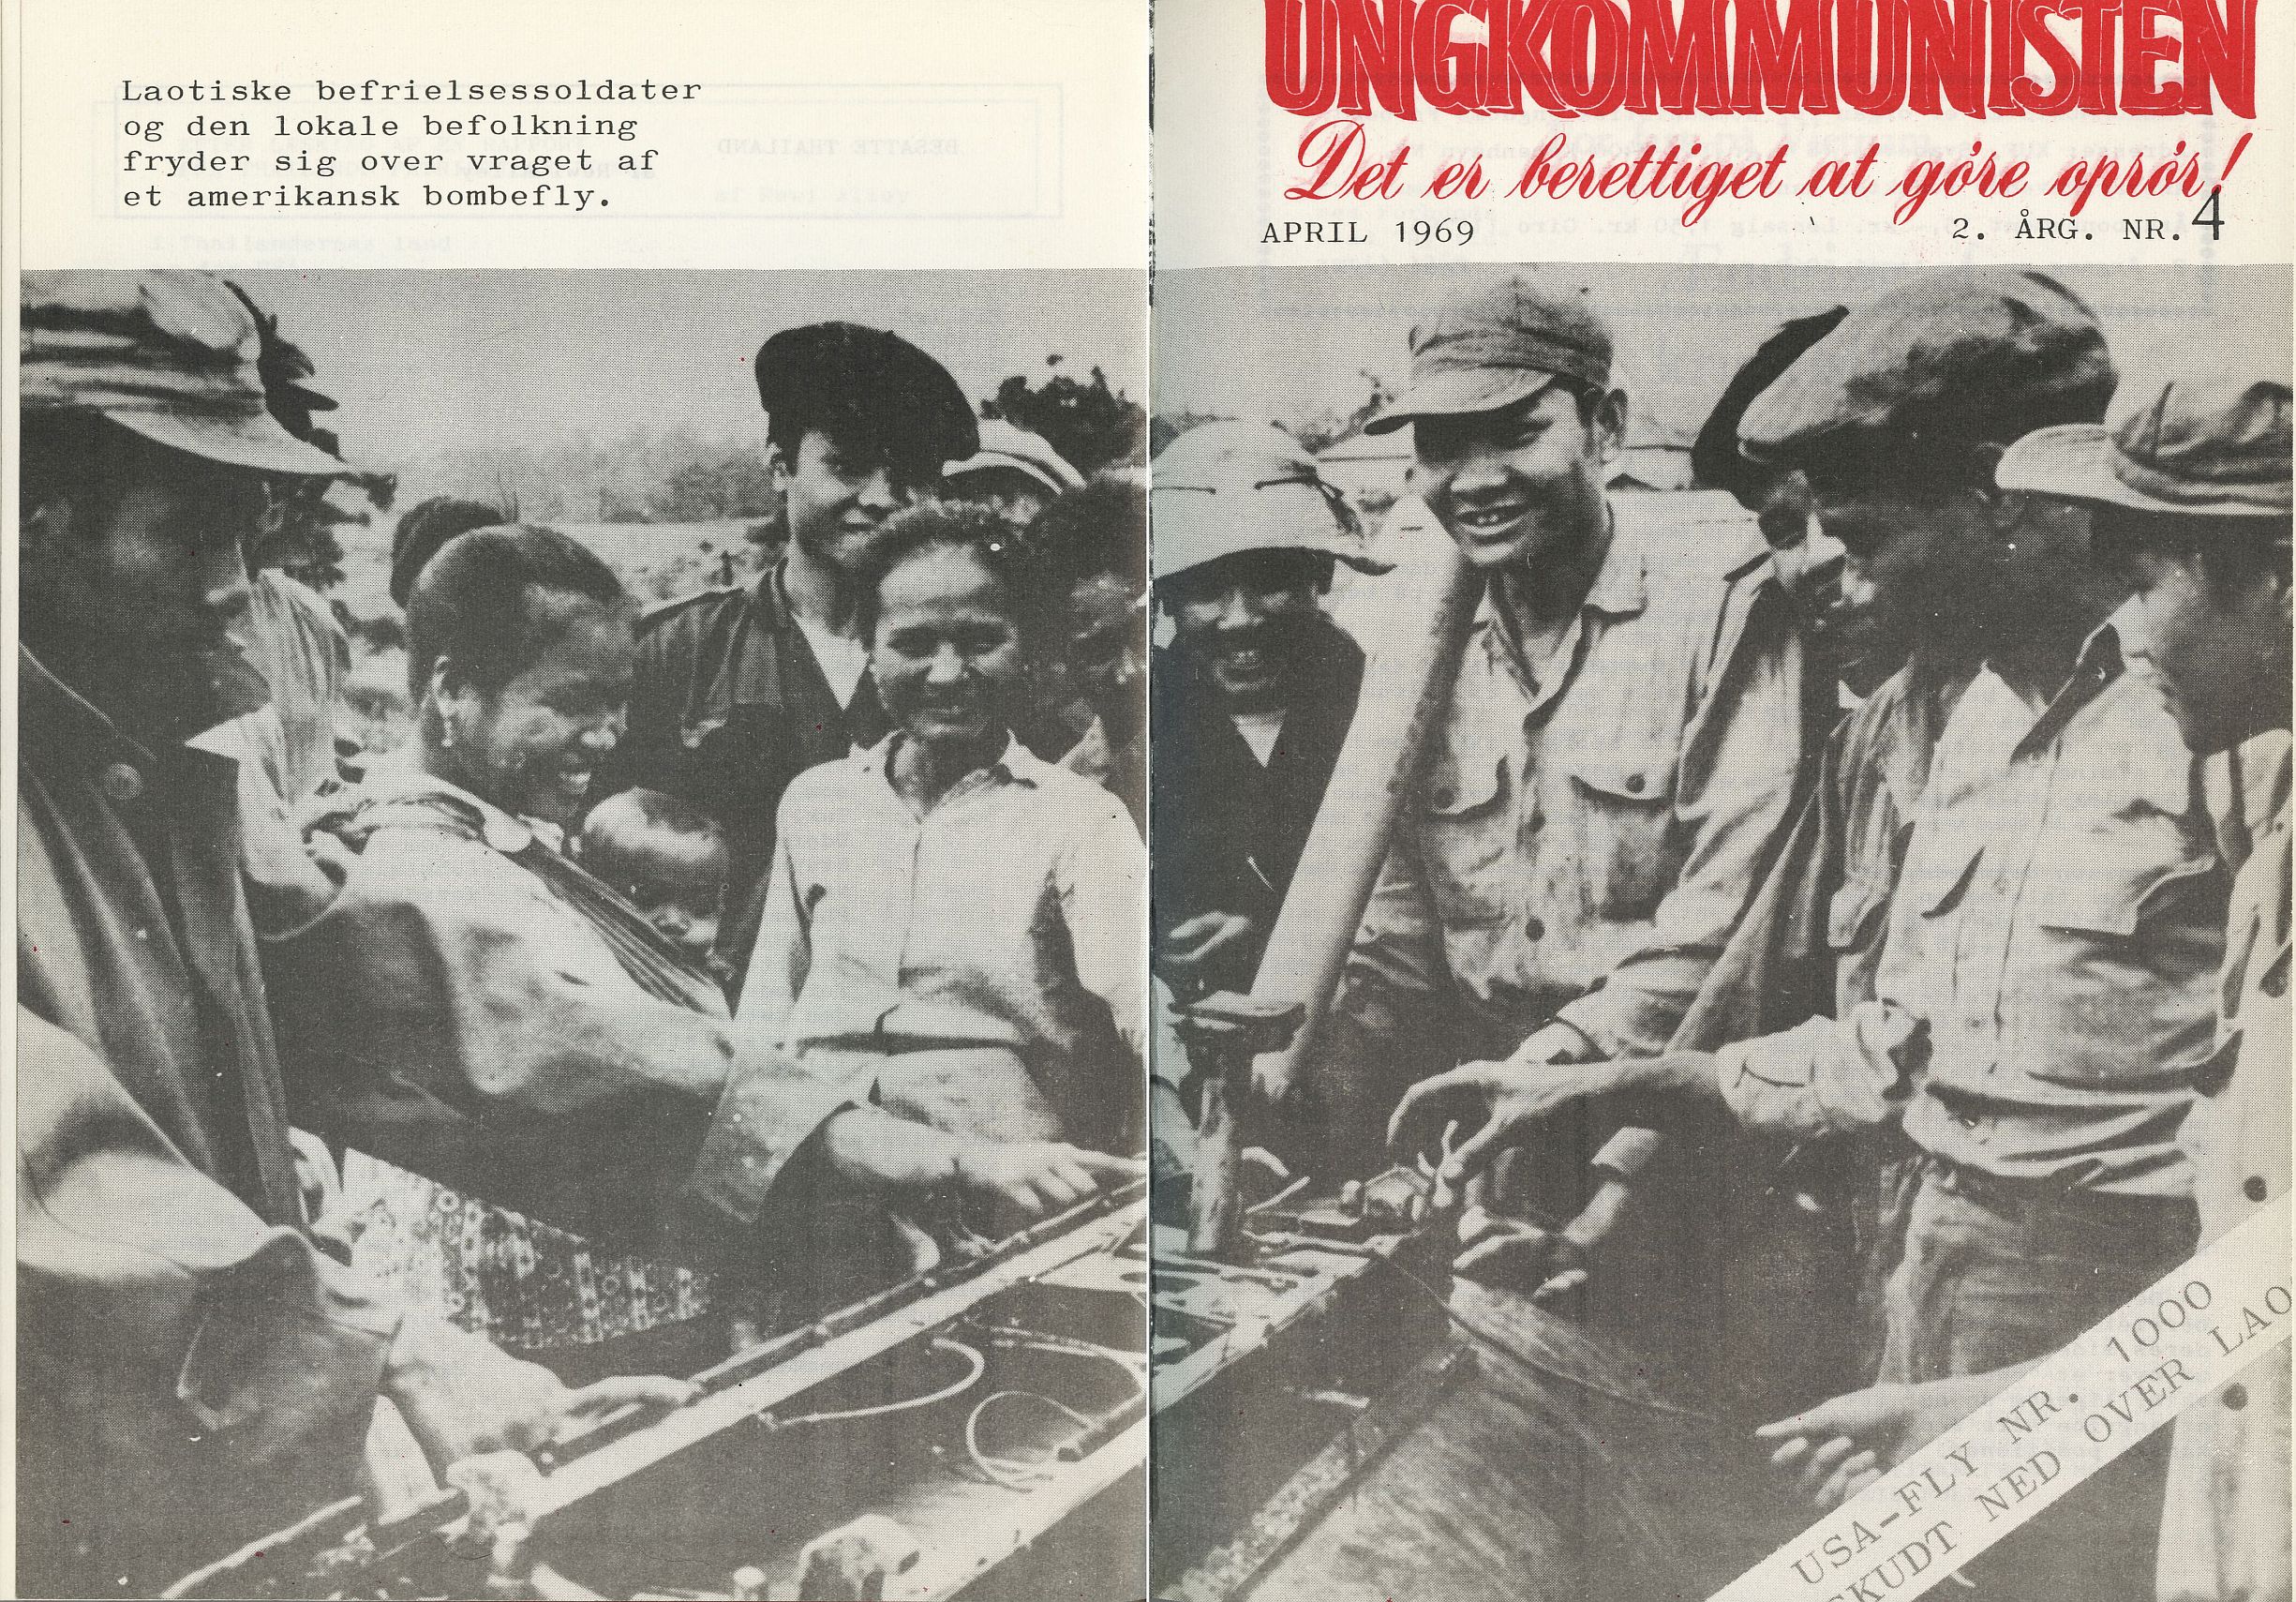 Omslag på Ungkommunisten 1969, nr. 4: Laotiske befrielsessoldater og den lokale befolkning fryder sig over vraget af et amerikansk bombefly.